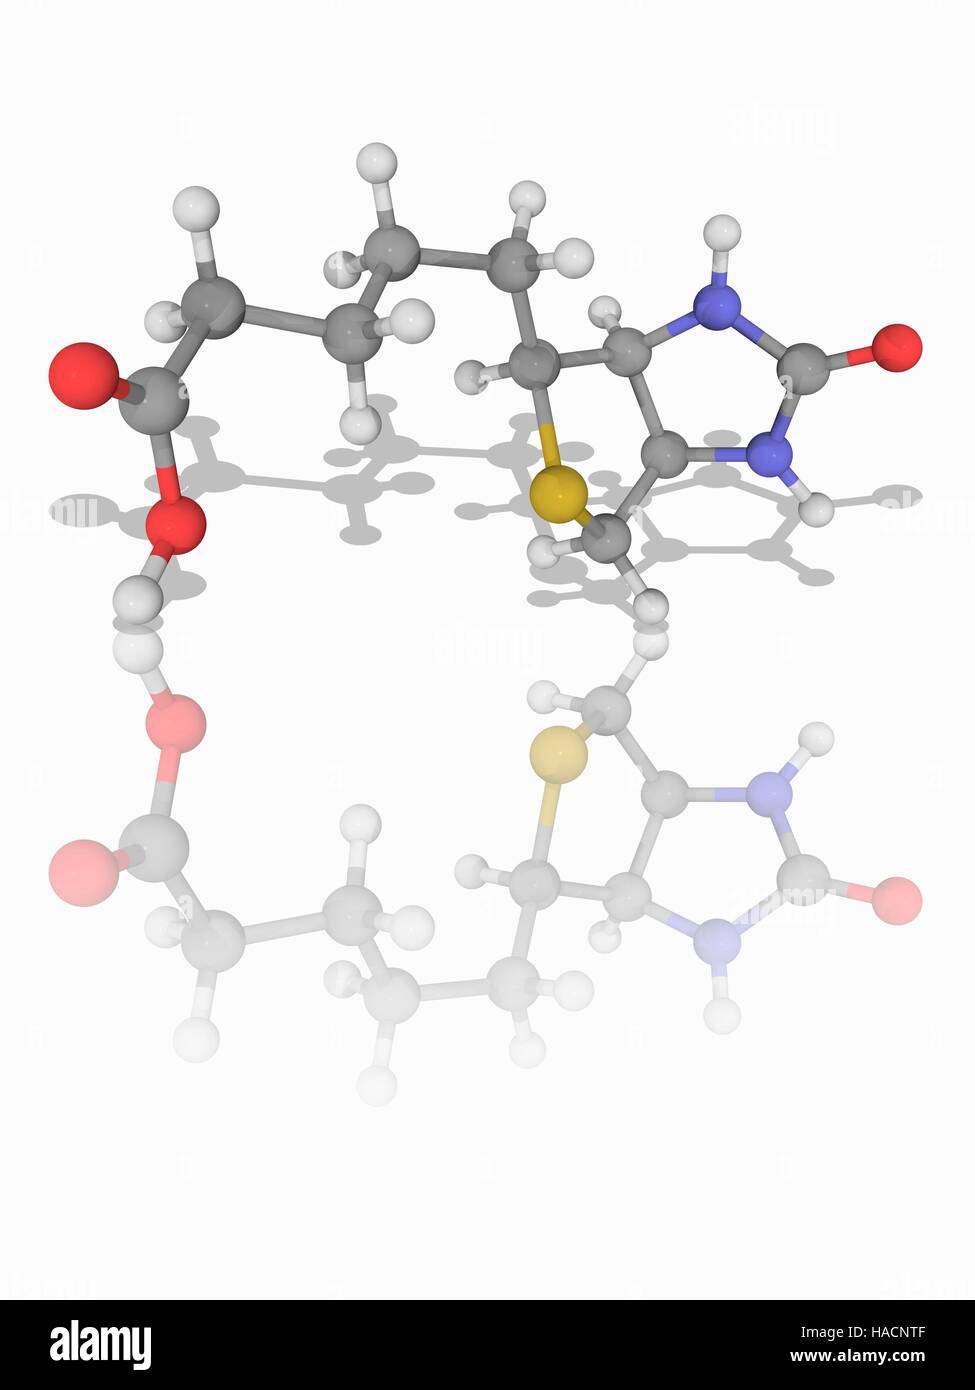 La vitamine B7. Le modèle moléculaire de la biotine (C10.H16.N2.O3.S), également connu sous le nom de vitamine B7, vitamine H et coenzyme R. Cette vitamine est nécessaire à la croissance cellulaire, la production d'acides gras et le métabolisme des graisses et des acides aminés. Les atomes sont représentés comme des sphères et sont codés par couleur : carbone (gris), l'hydrogène (blanc), l'azote (bleu), l'oxygène (rouge) et le soufre (jaune). L'illustration. Banque D'Images